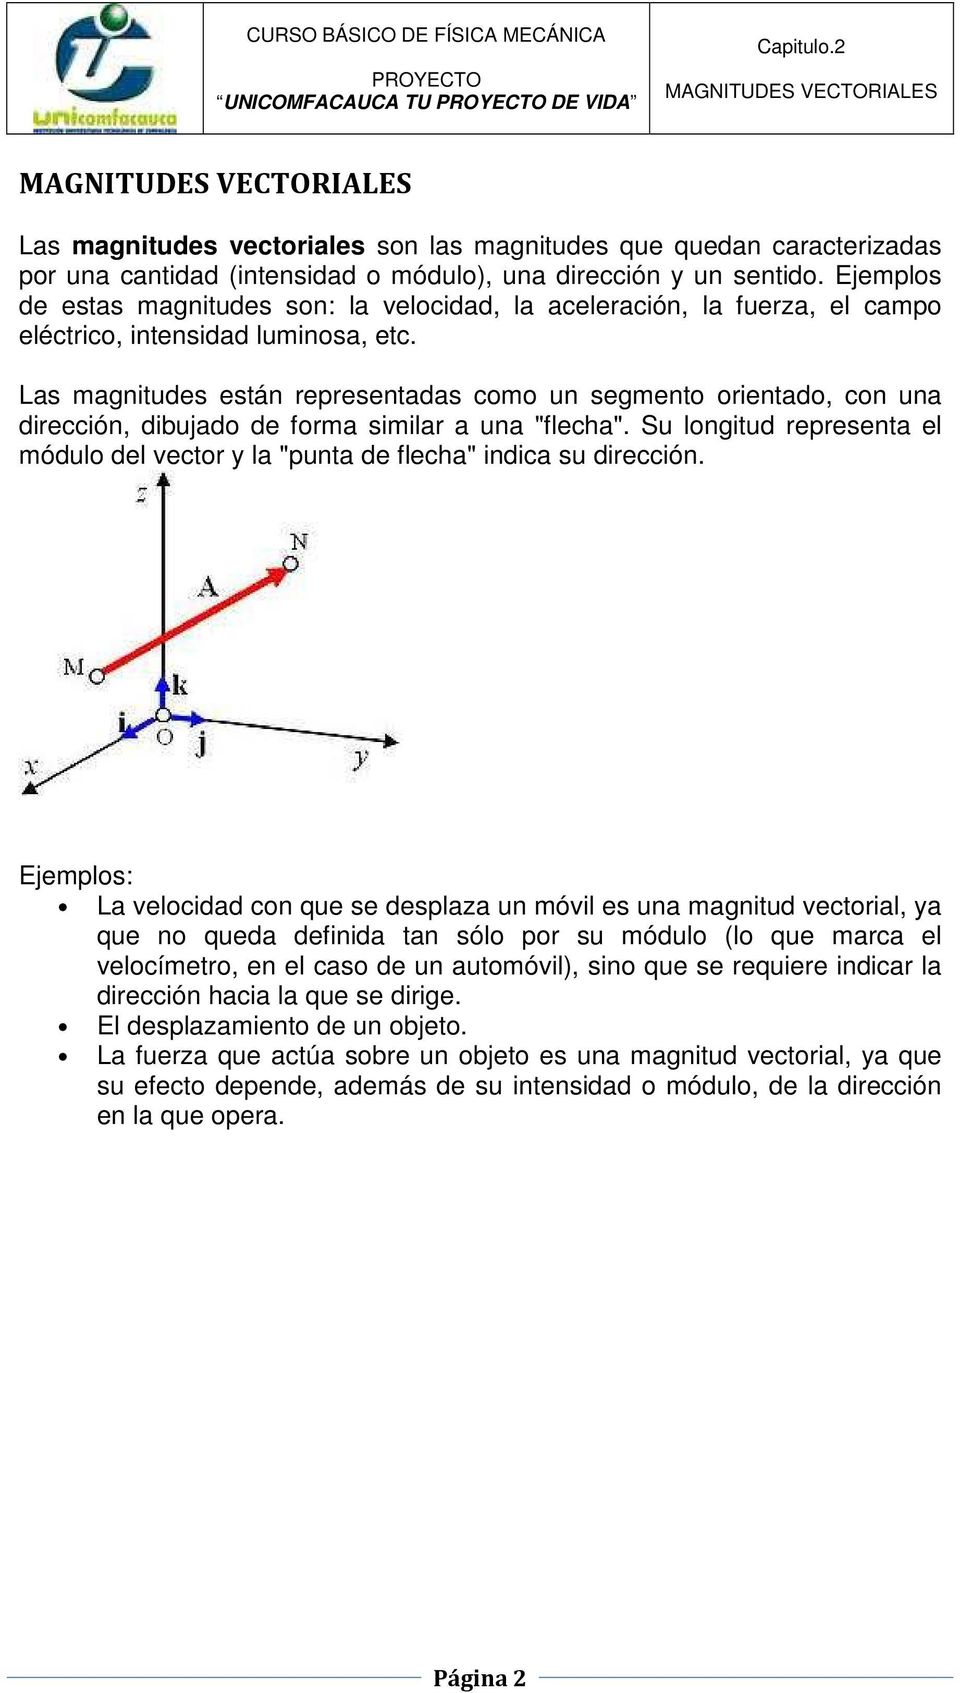 Las magnitudes están representadas como un segmento orientado, con una dirección, dibujado de forma similar a una "flecha".